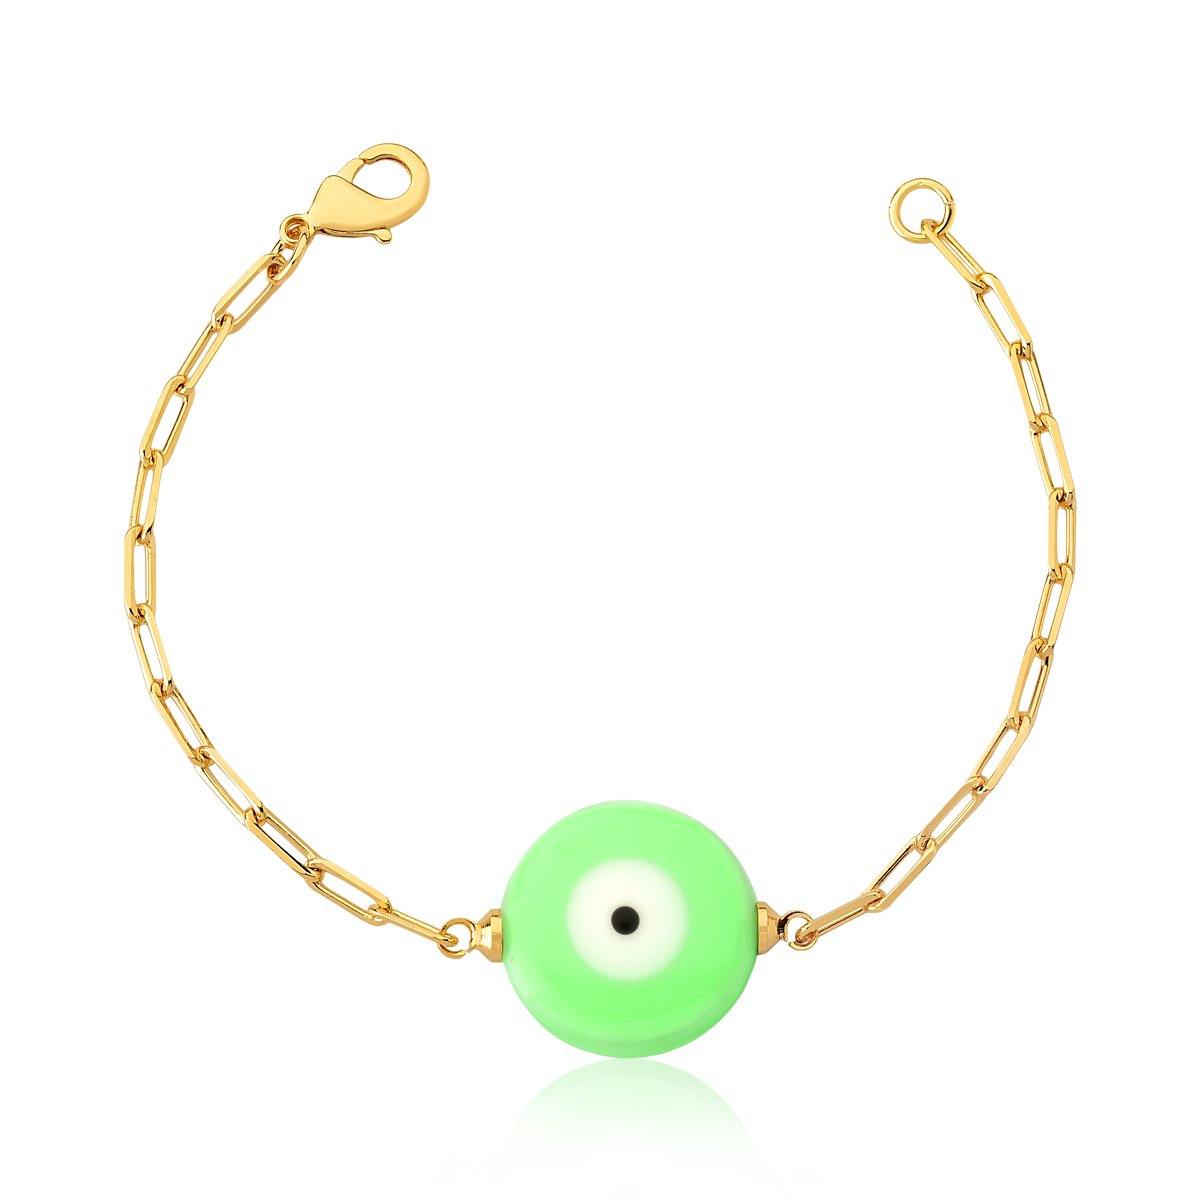 Pulseira em Malha e Olho Grego Esmaltado Verde - Citrine Concept Jewelry